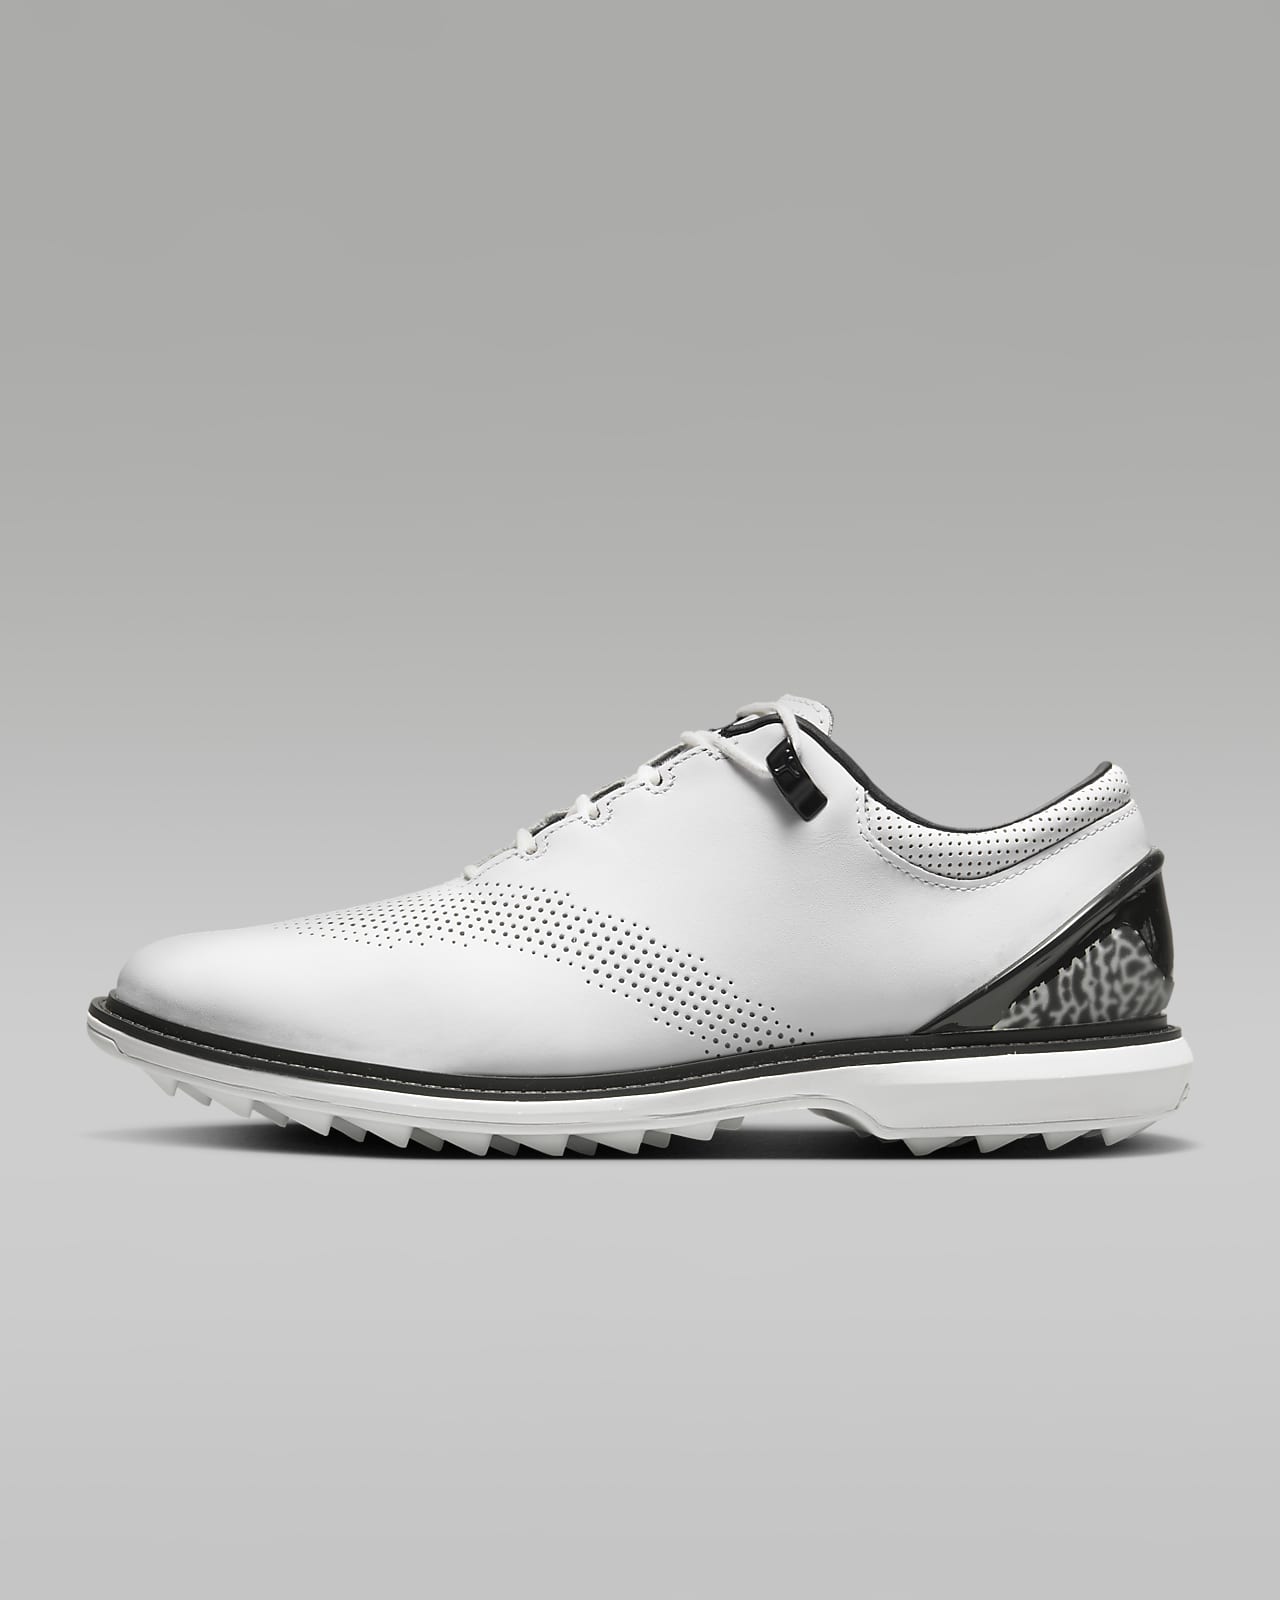 Jordan ADG 4 Zapatillas de golf - Hombre